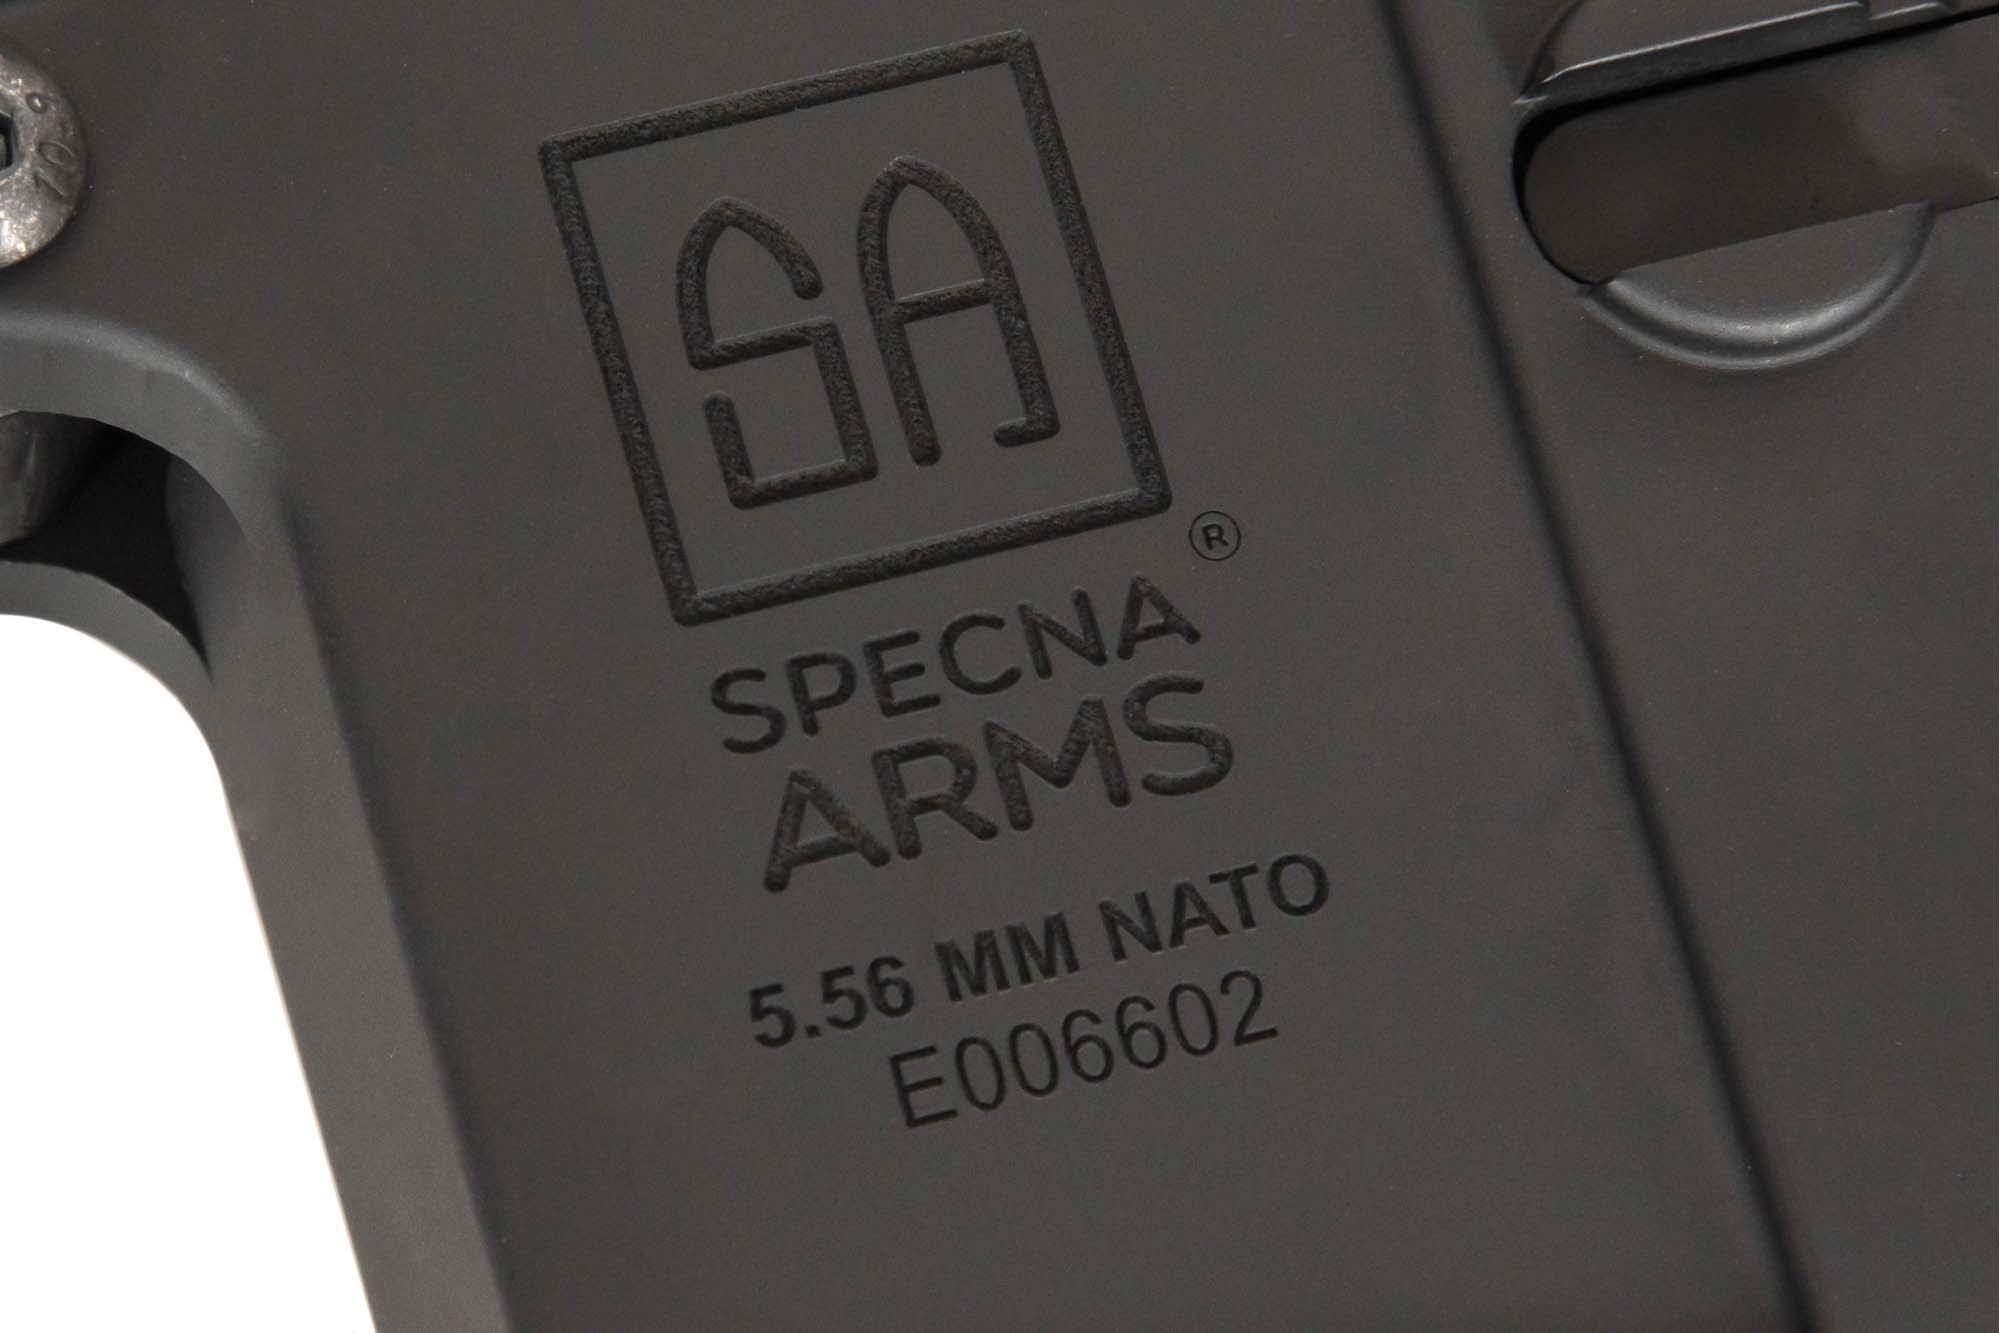 SA-E23 EDGE ™ Carbine Replica - Bronze Chaos by Specna Arms on Airsoft Mania Europe